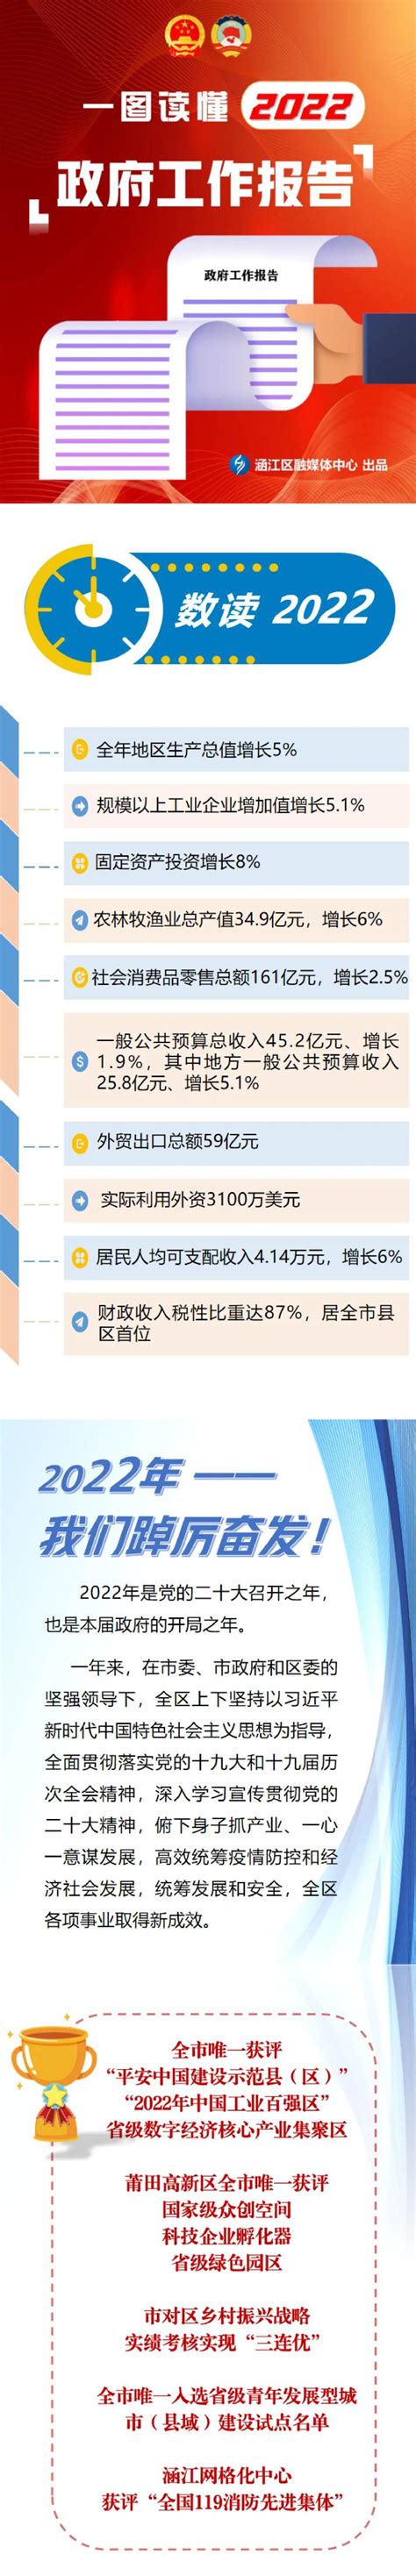 江北区劳动监察推行“三色预警” 撑起欠薪防范保护伞